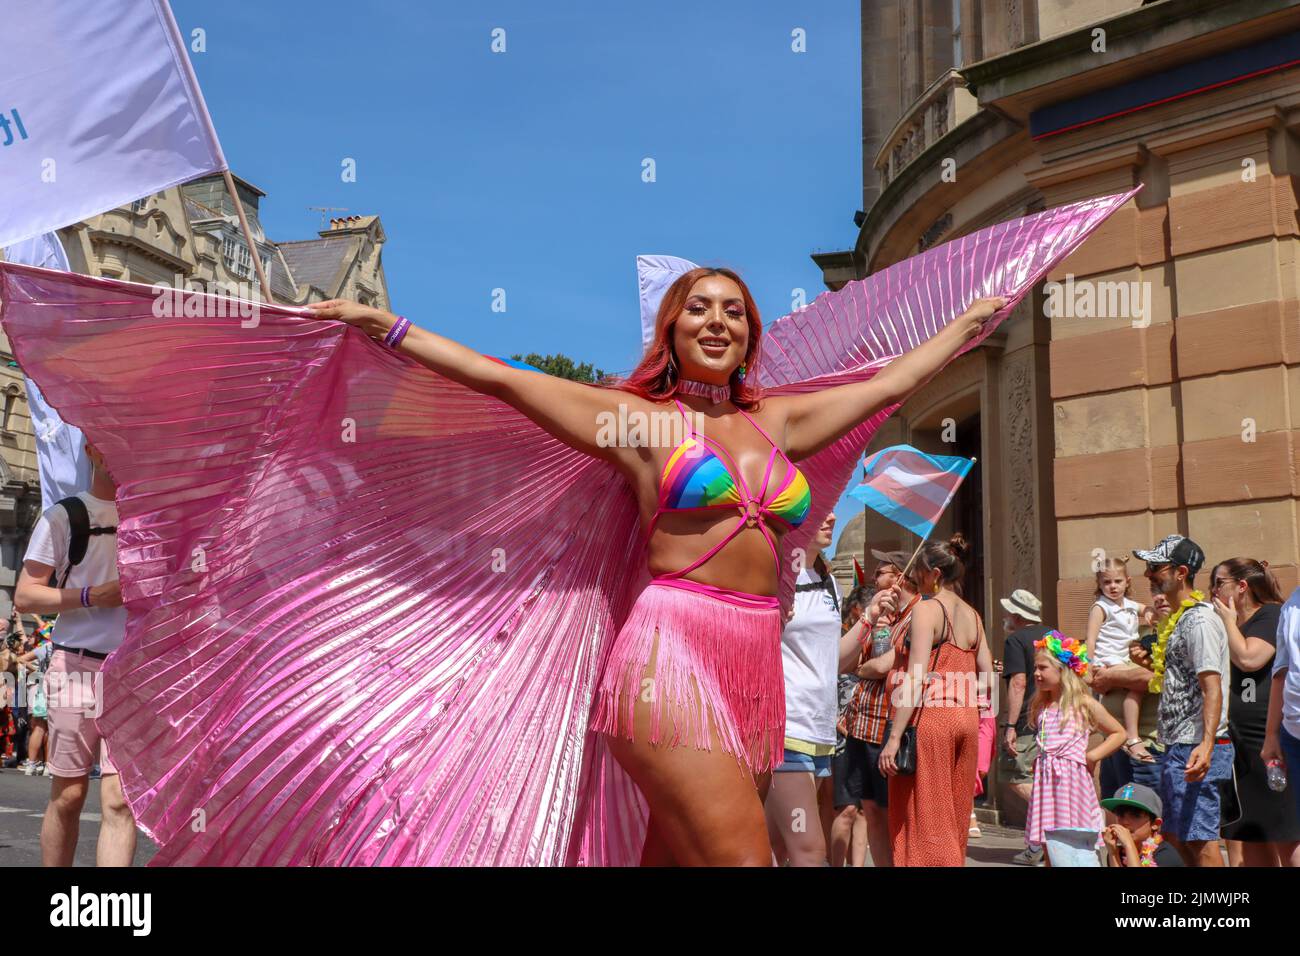 Aujourd'hui, des milliers de personnes se sont tournées dans les rues de Brighton pour le défilé annuel de la fierté qui célèbre son anniversaire de 30th ans. Déclaration de fierté de Brighton après 2 ans de ne pas être en mesure de célébrer la fierté dans notre ville, nous sommes heureux d'annoncer que le thème de la parade communautaire Brighton & Hove Pride LGBTQ+ 2022 du samedi 6th août sera «Amour, protestation et unité» pour le 30th anniversaire. Notre thème a été créé à la suite de commentaires positifs de groupes communautaires et afin de poursuivre nos objectifs de campagne. Banque D'Images